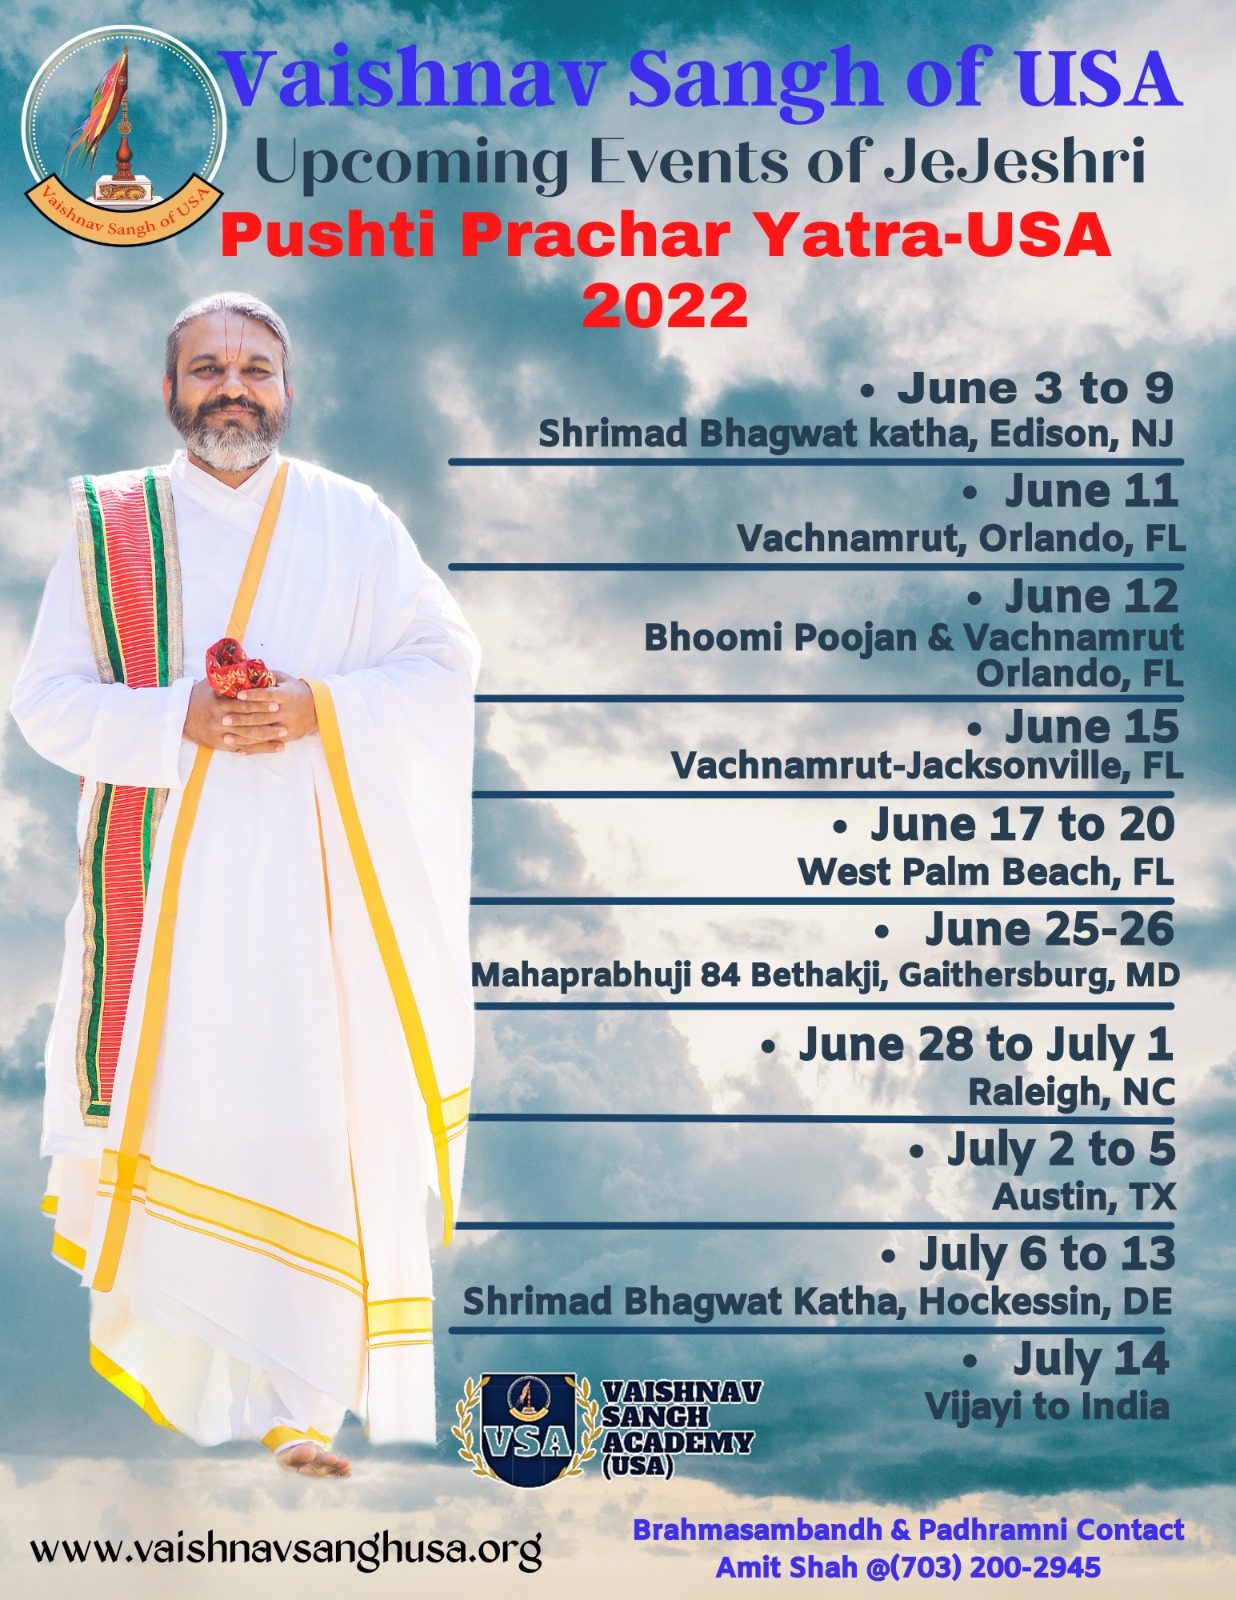 Pushti Prachar Yatra - USA